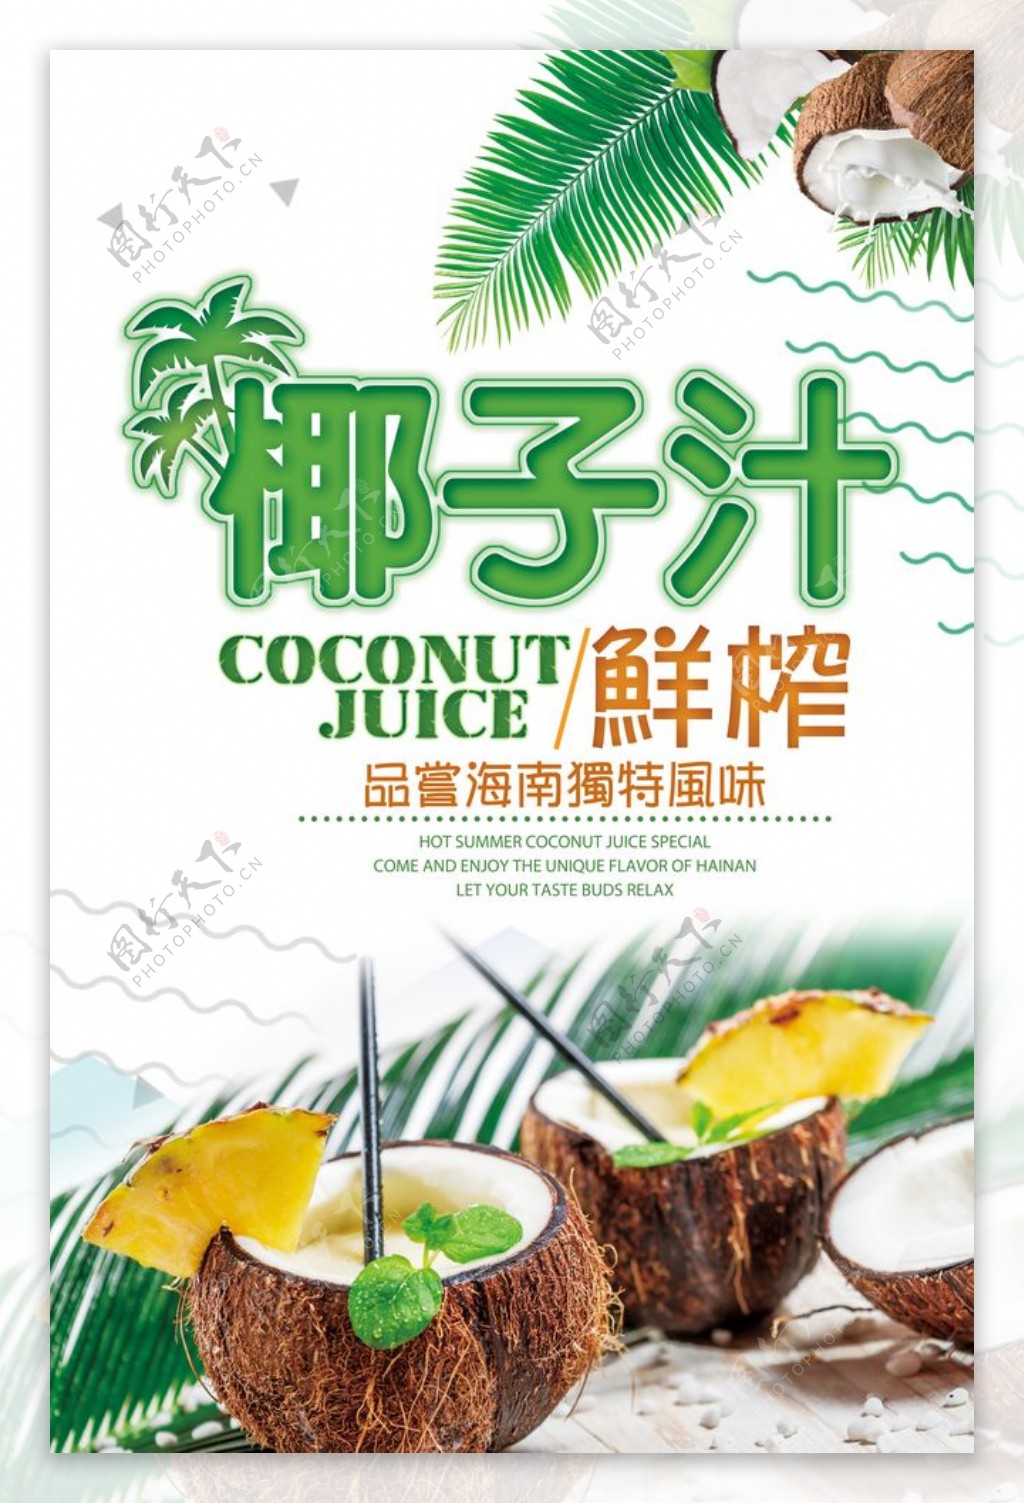 椰子汁 生榨椰子汁 听装 铁罐 24支装 海南风味 健康饮品椰汁批发-阿里巴巴